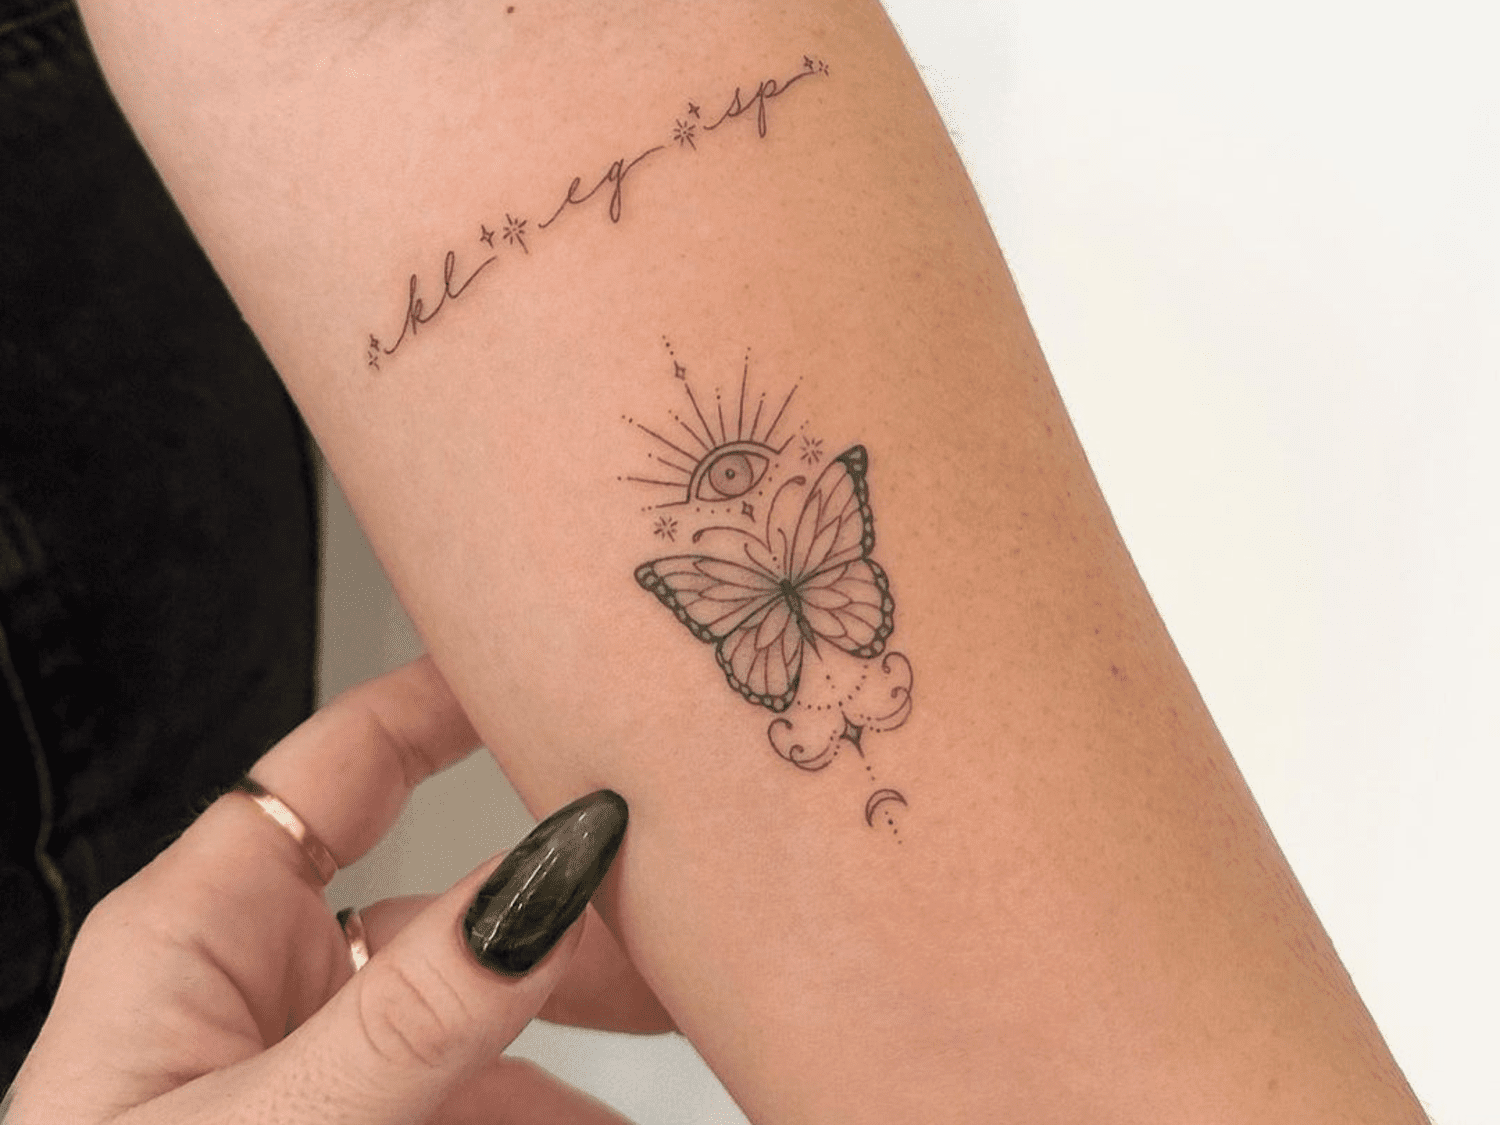 Los 10 Tatuajes más habituales y sus significados